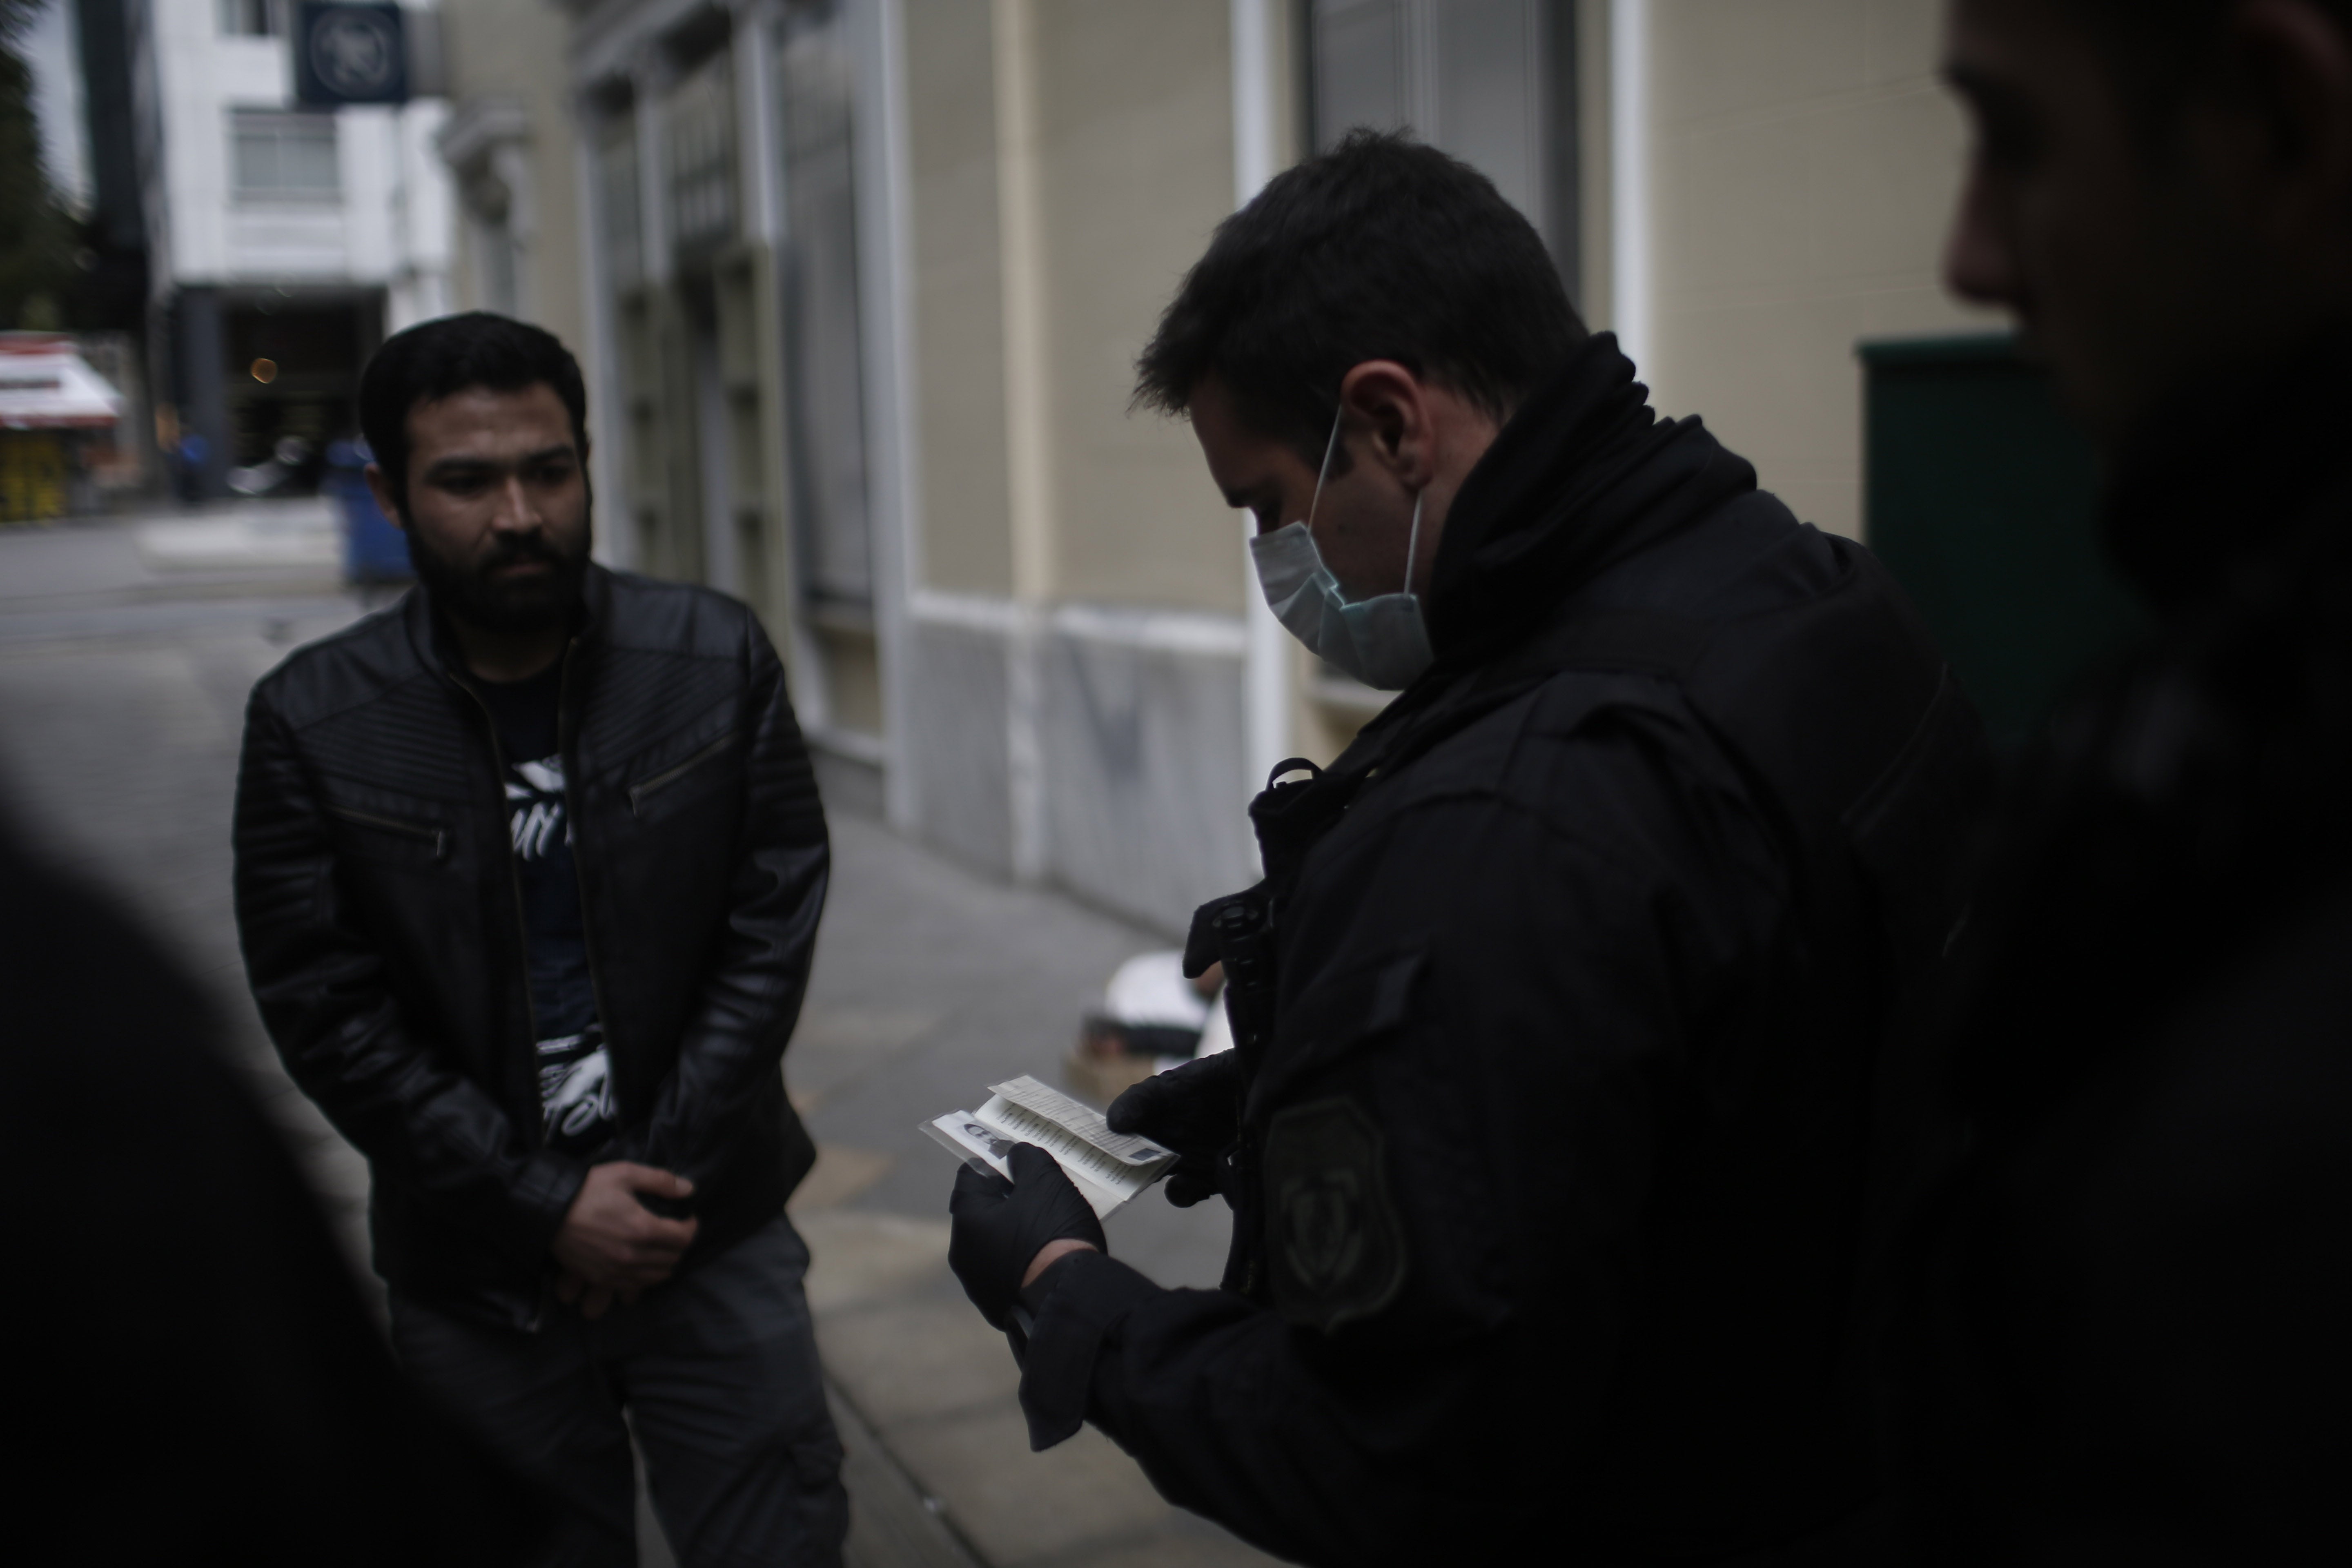 Αστυνομικοί ελέγχουν τα έγγραφα και τις άδειες ανθρώπων στους δρόμους της Αθήνας, Ελλάδα, 23 Μαρτίου 2020.